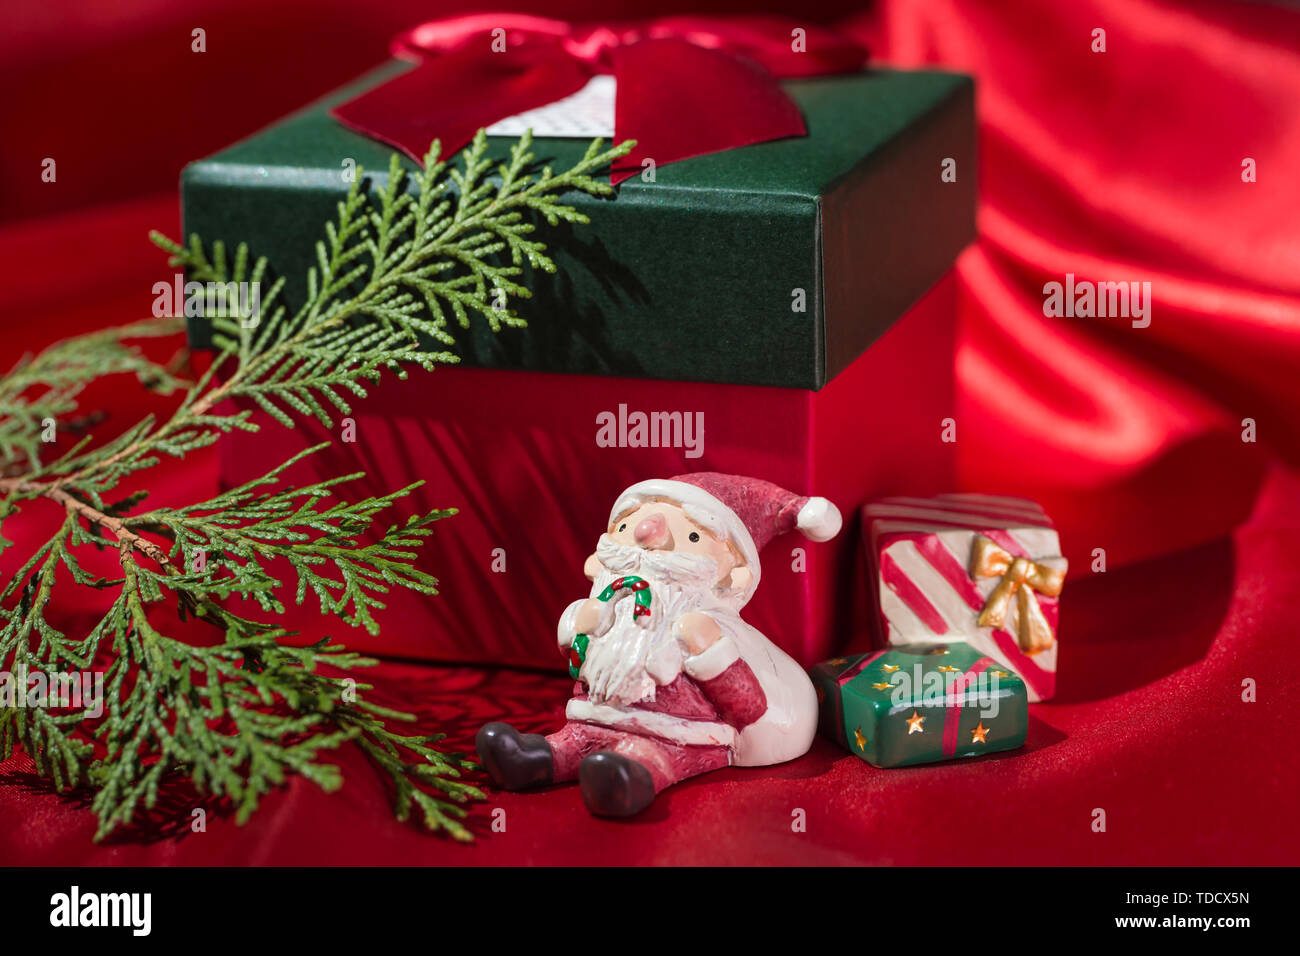 Exquisites Geschenk Box. Stockfoto